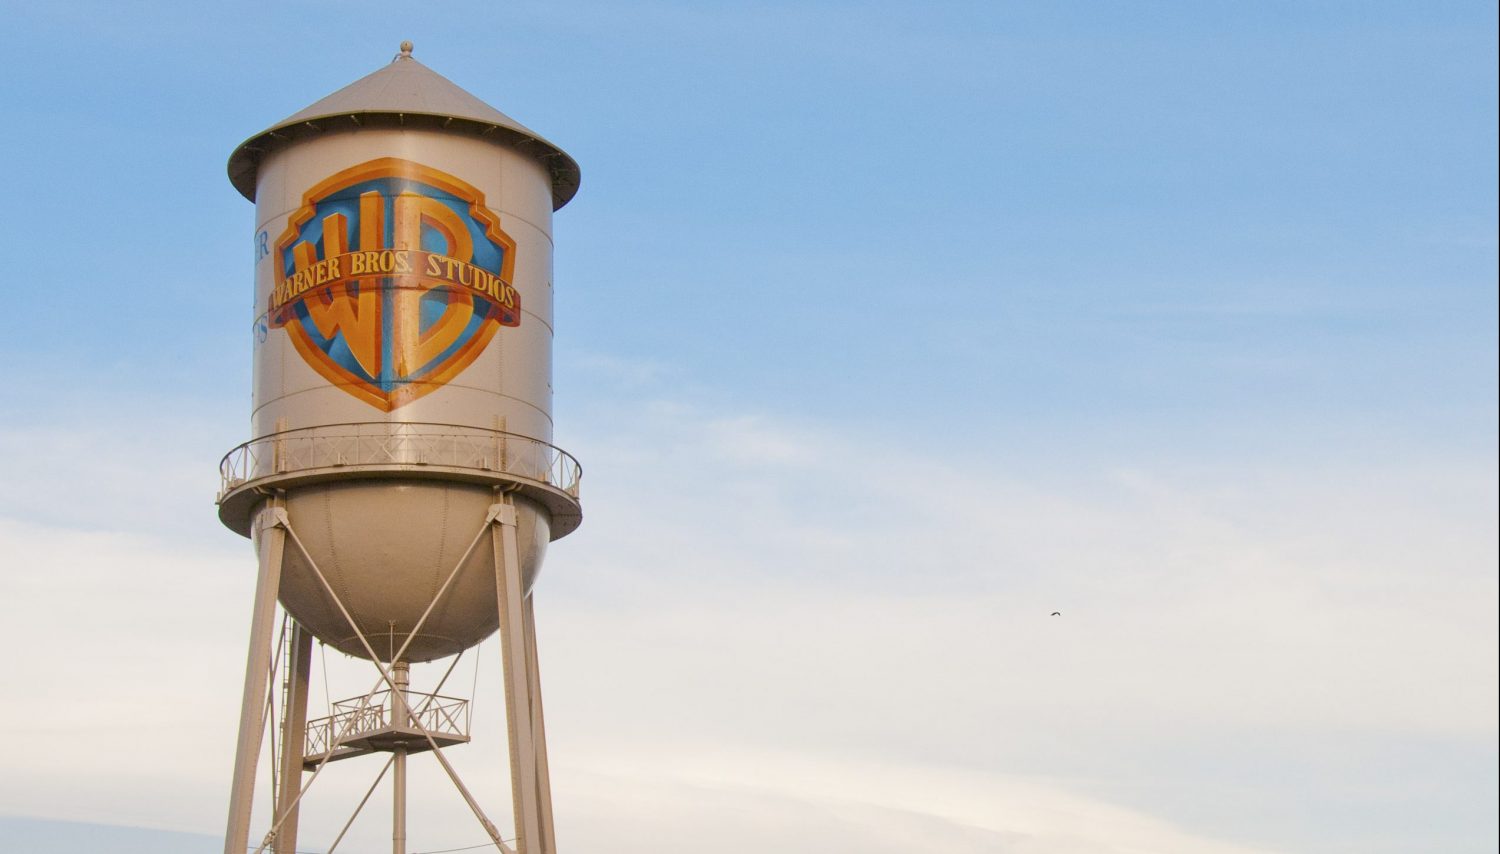 A famosa caixa d'água da Warner Bros. (Foto: divulgação Warner Bros. Studios)